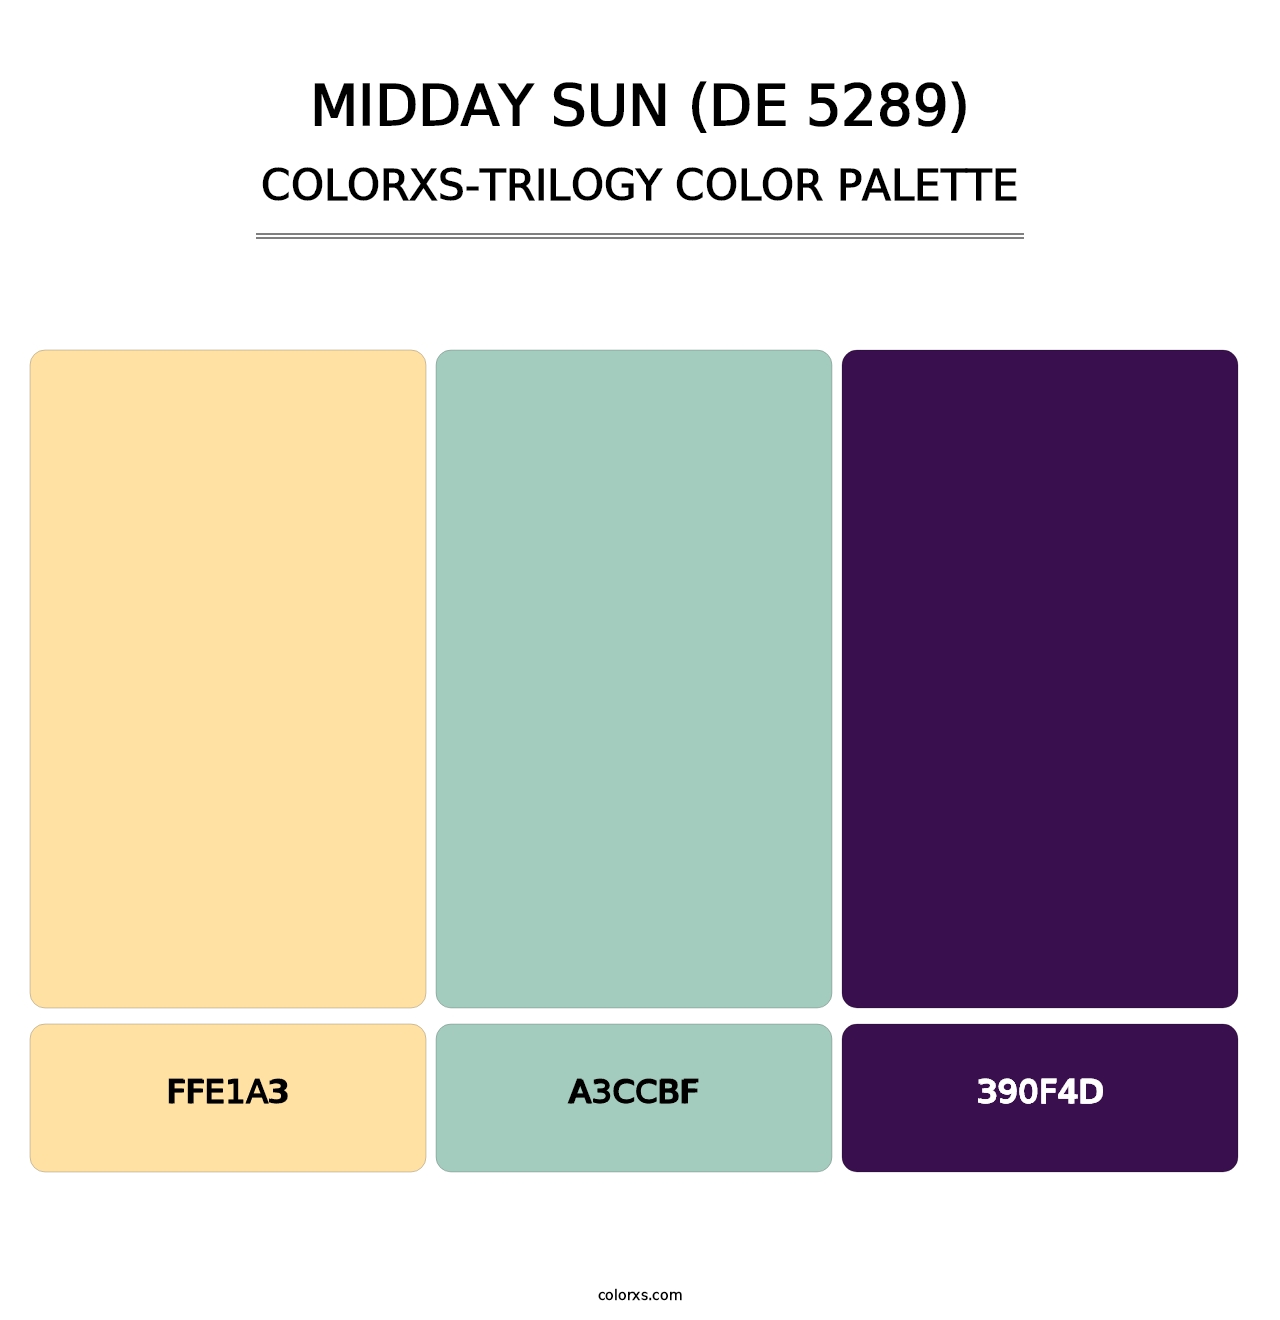 Midday Sun (DE 5289) - Colorxs Trilogy Palette